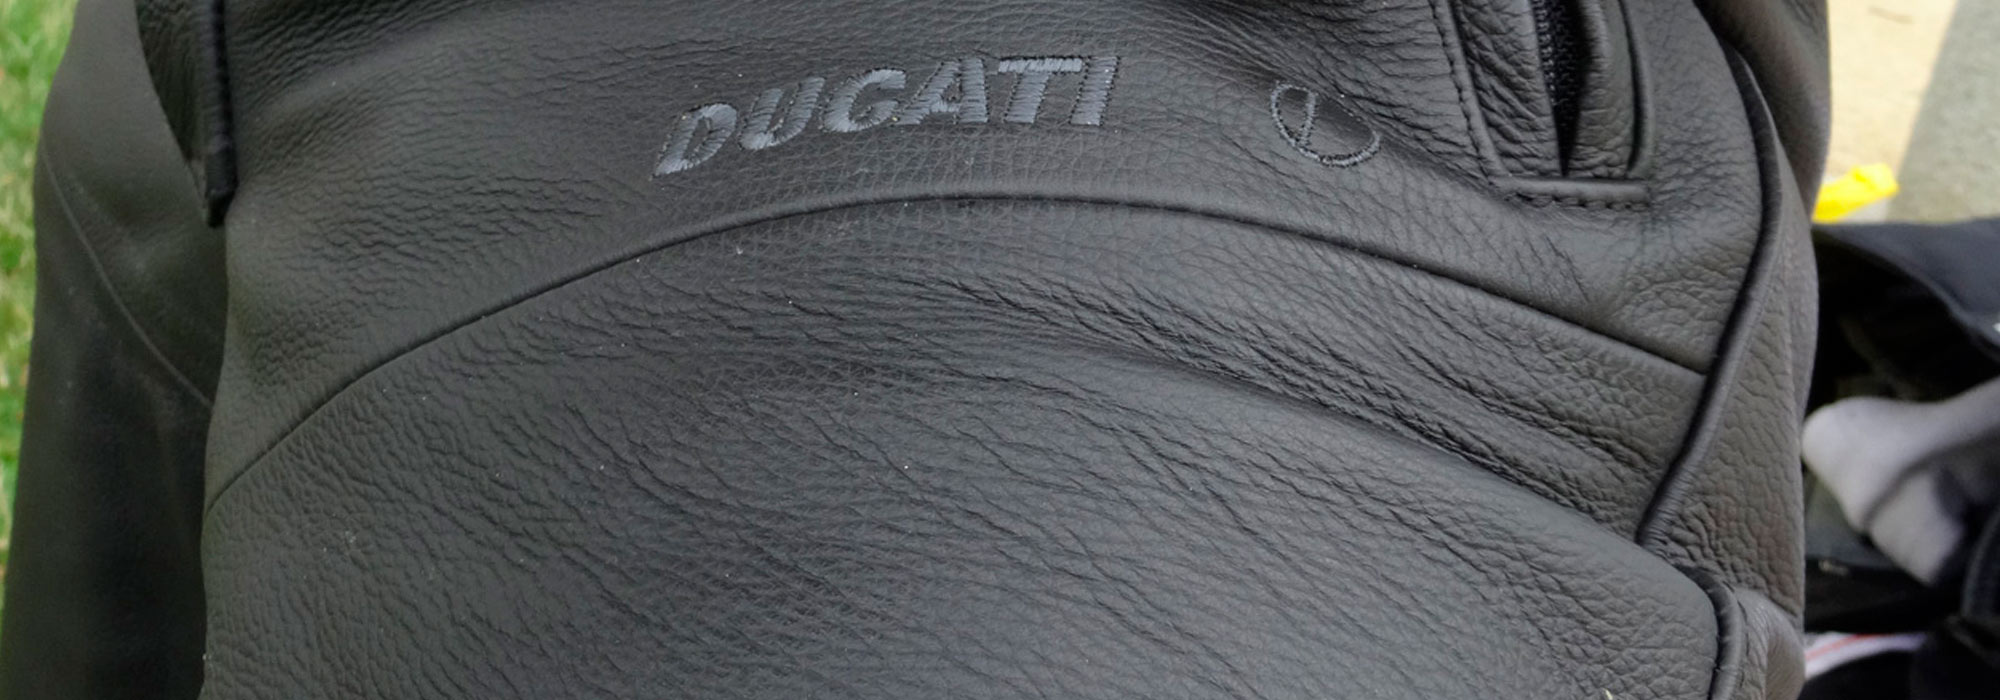 Pantalons Ducati